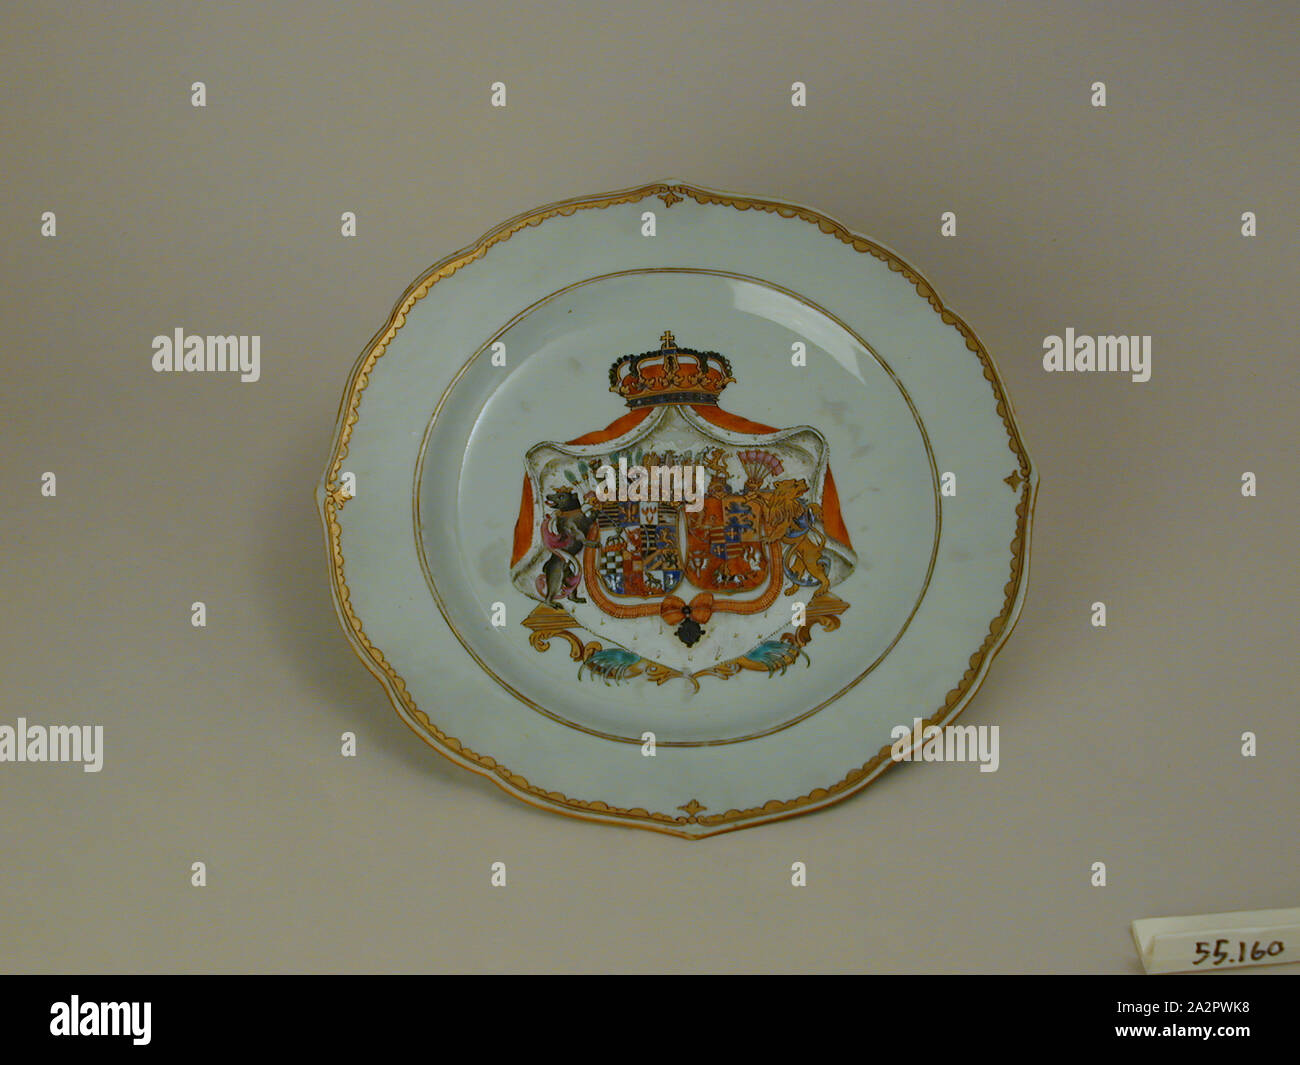 Inconnu (Chinois), la plaque, fin du xviiie siècle, émaillée porcelaine pâte dure avec émail polychrome et dorure, Hauteur x diamètre : 1 x 9 1/4 in. (2,5 x 23,5 cm Banque D'Images